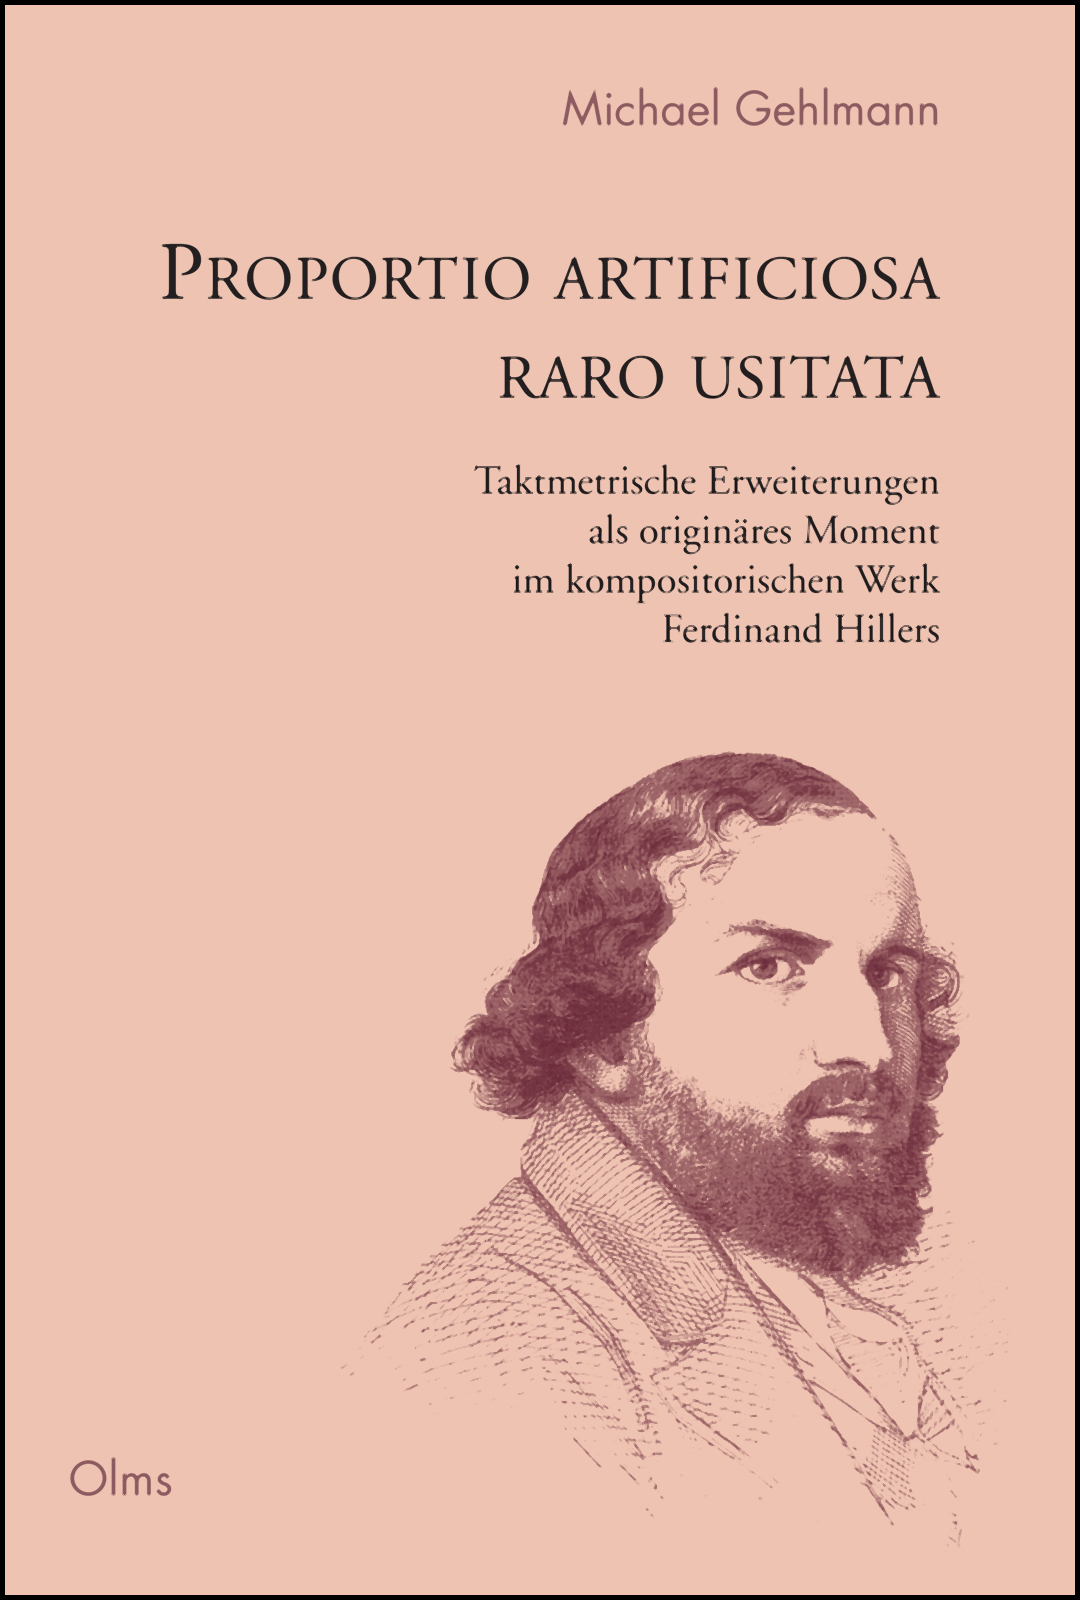 Proportio artificiosa raro usitata, Taktmetrische Erweiterungen als originäres Moment im kompositorischen Werk Ferdinand Hillers. - Gehlmann, Michael